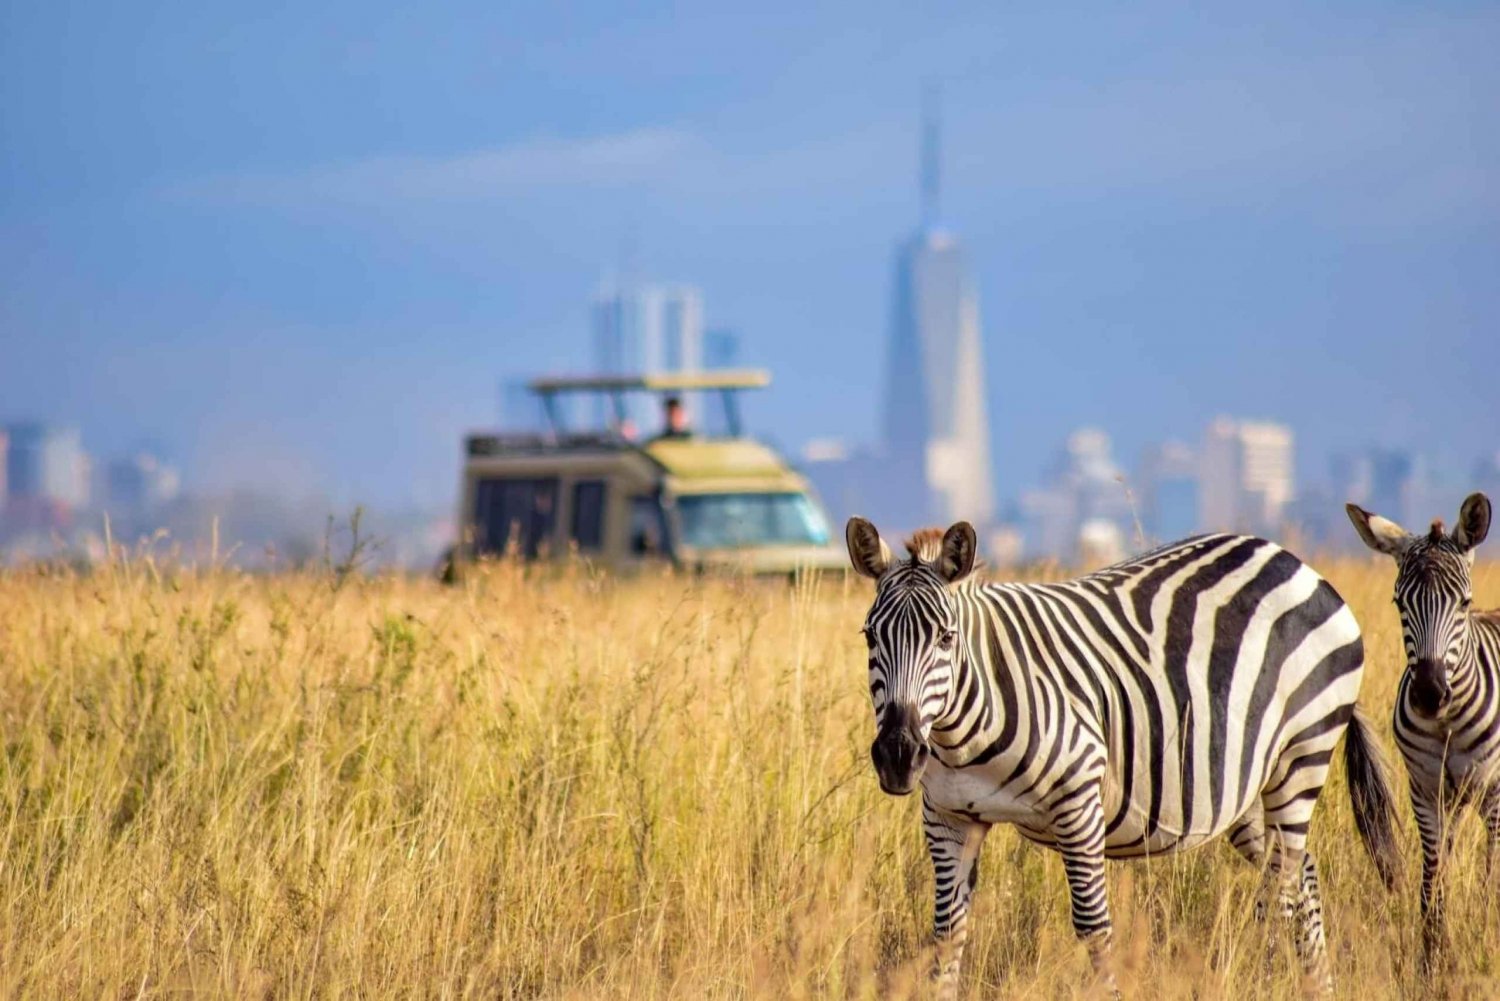 Escala en el Aeropuerto de Nairobi: Visita al Parque Nacional de Nairobi